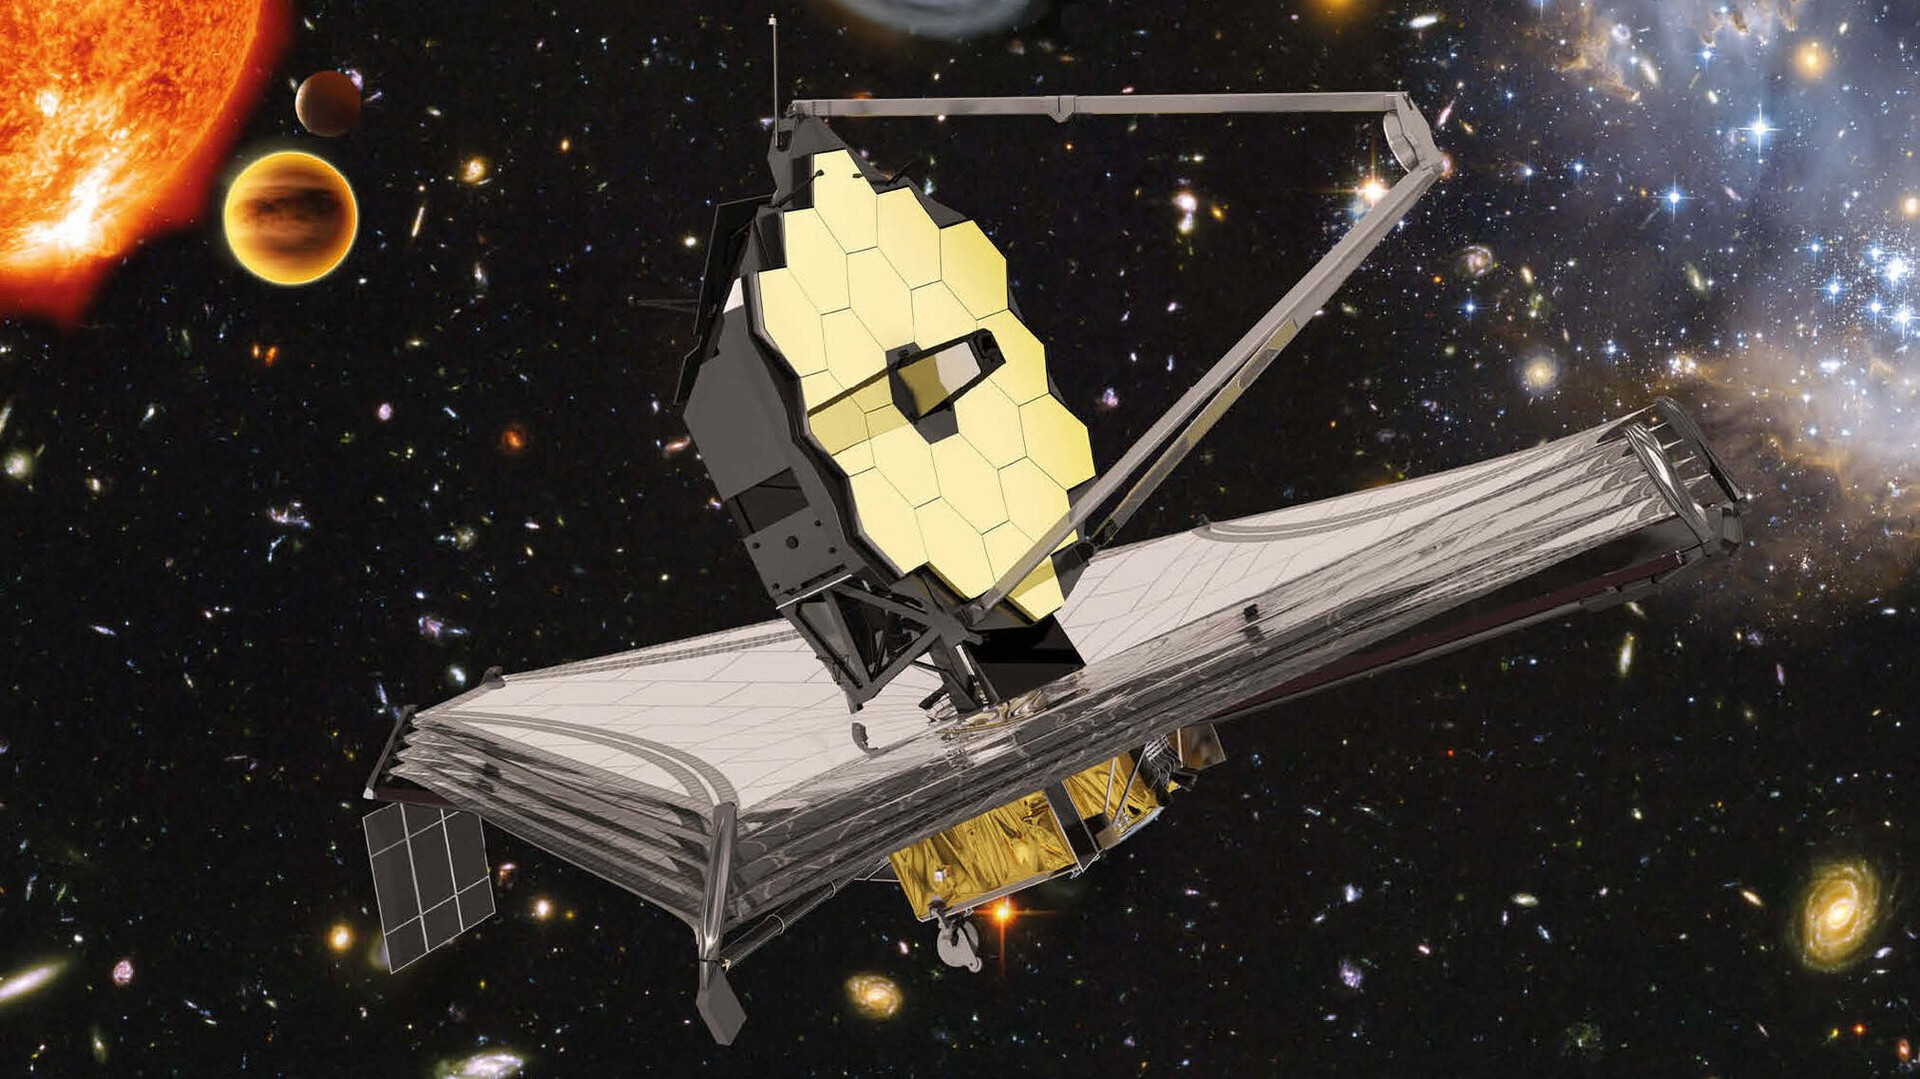 Kể từ đó, James Webb đã ghi lại sự huyền bí và vẻ đẹp của vũ trụ qua từng hình ảnh rực rỡ, thu hút cộng đồng yên thiên văn ở khắp mọi nơi. Dưới đây là 7 quan sát tốt nhất của kính thiên văn này về vũ trụ. (Ảnh: NASA)